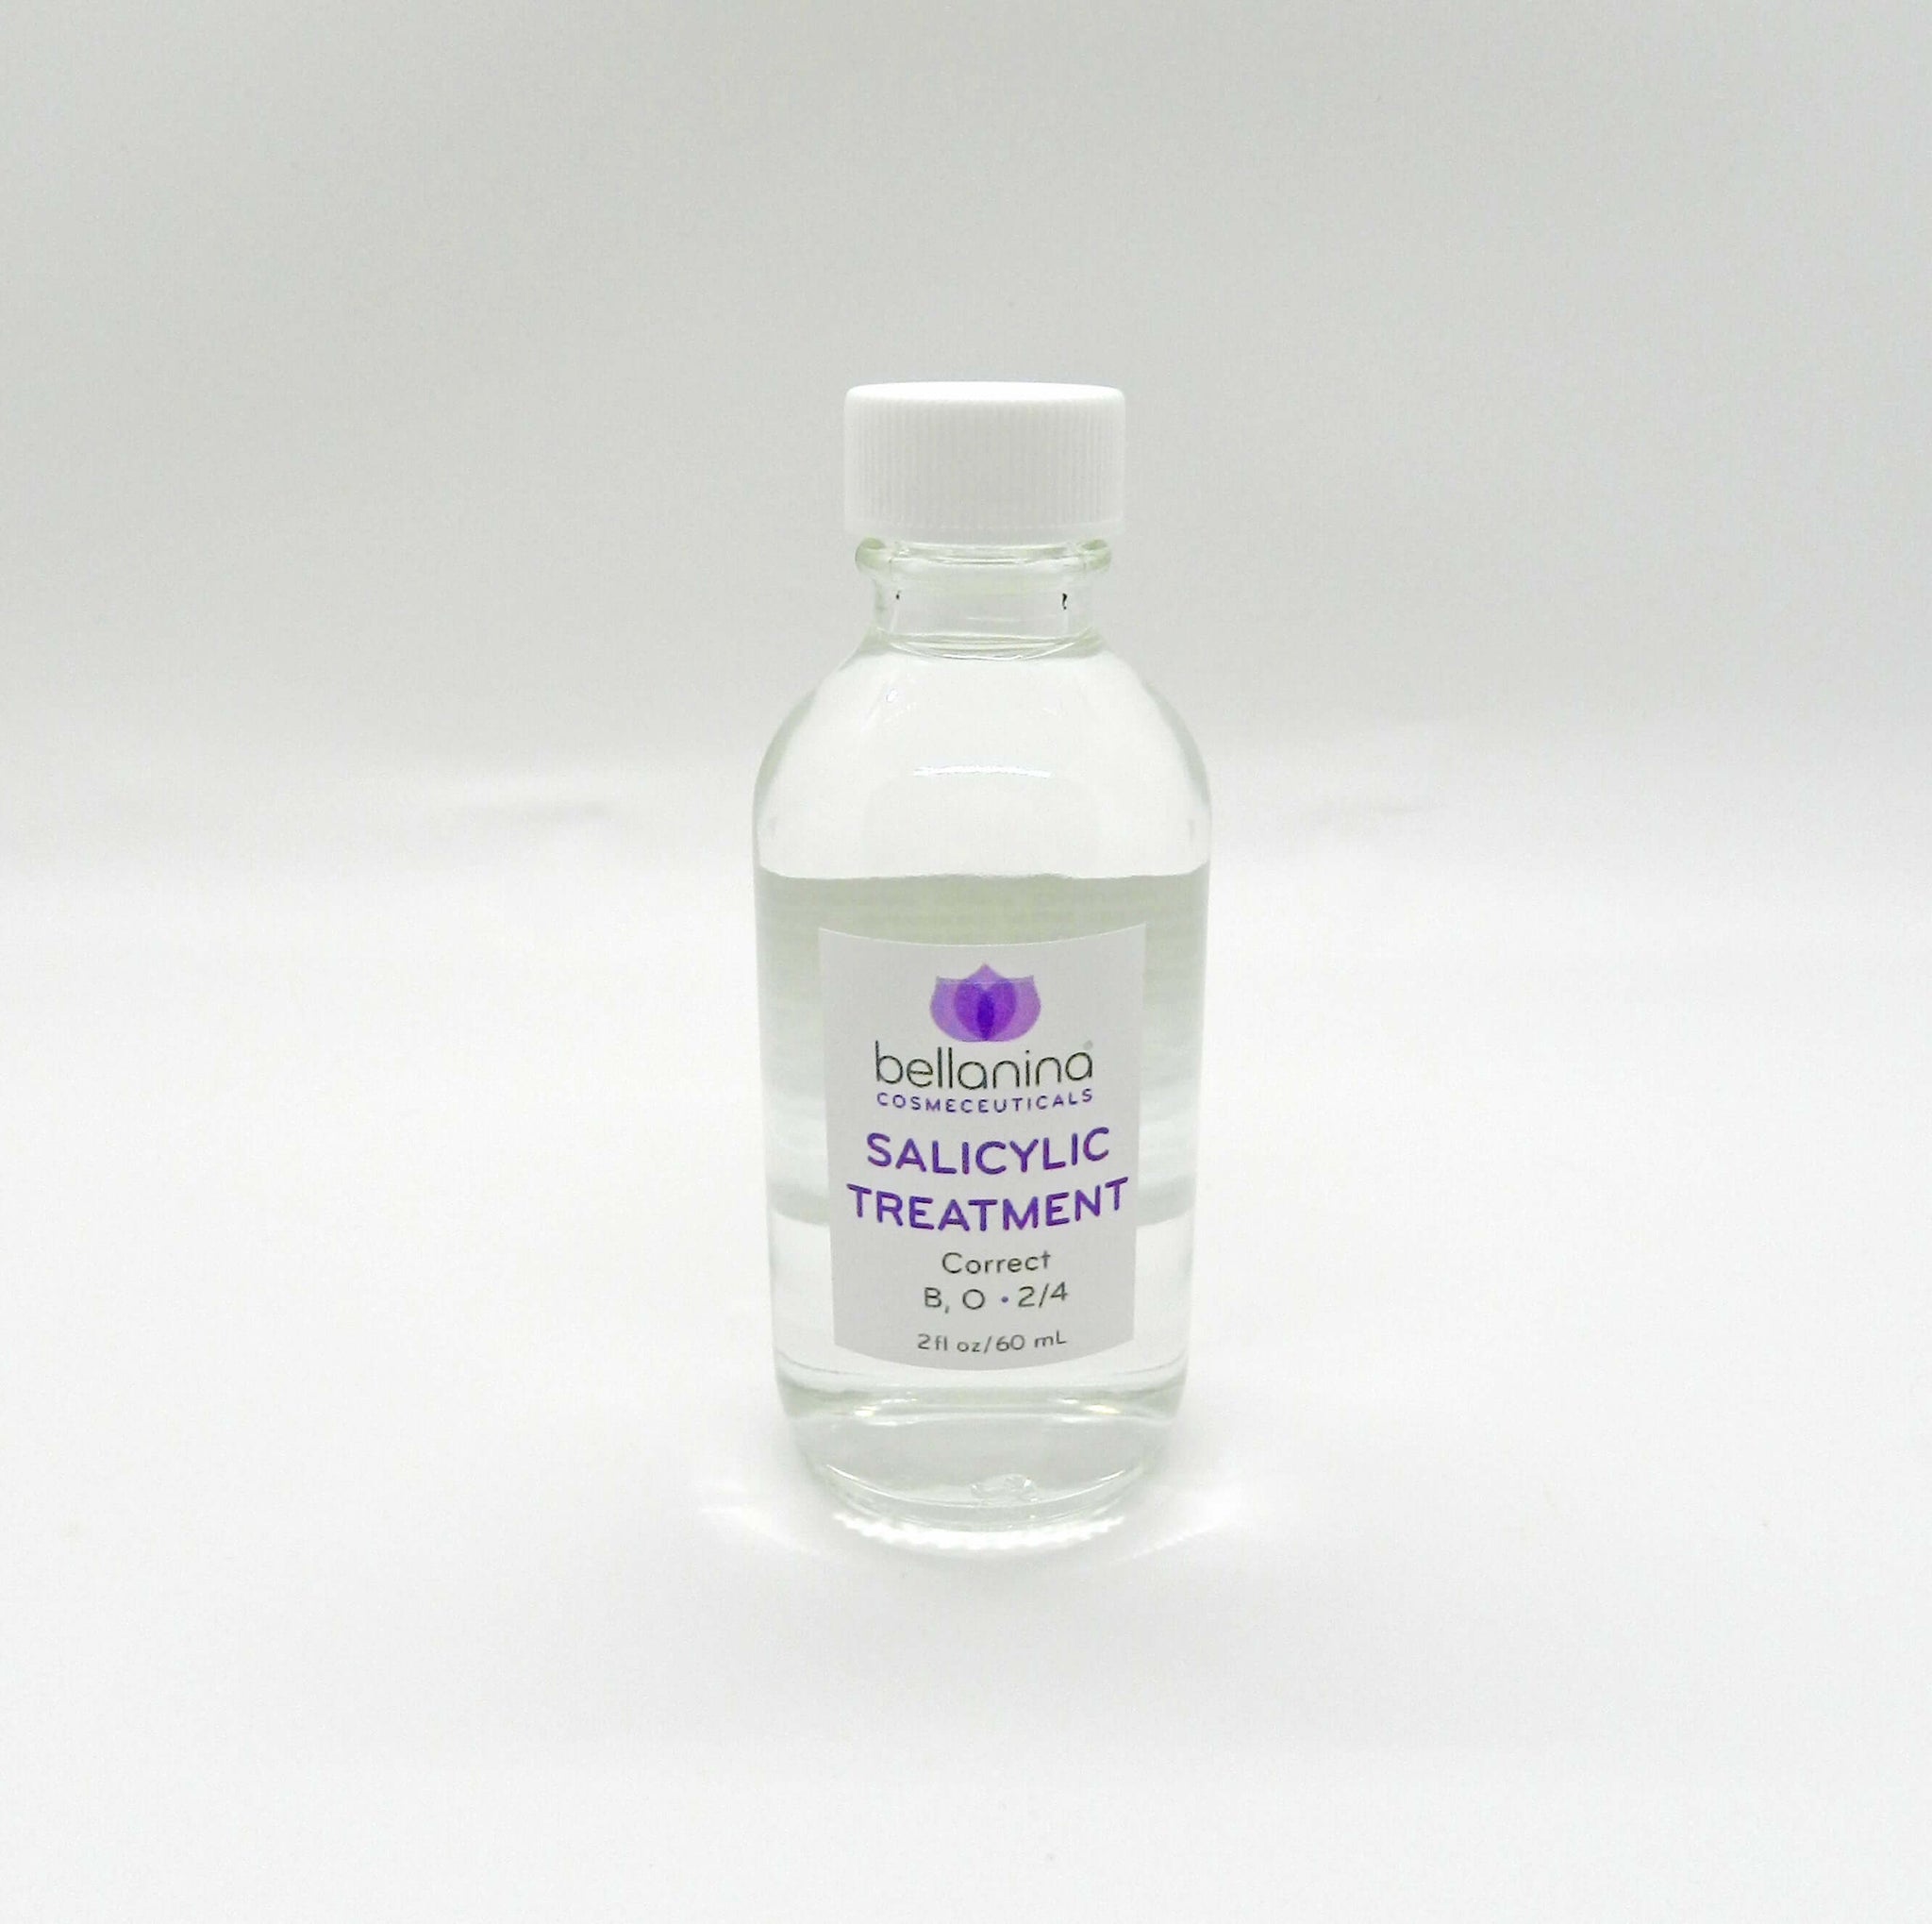 2 oz. bottle of Salicylic Treatment